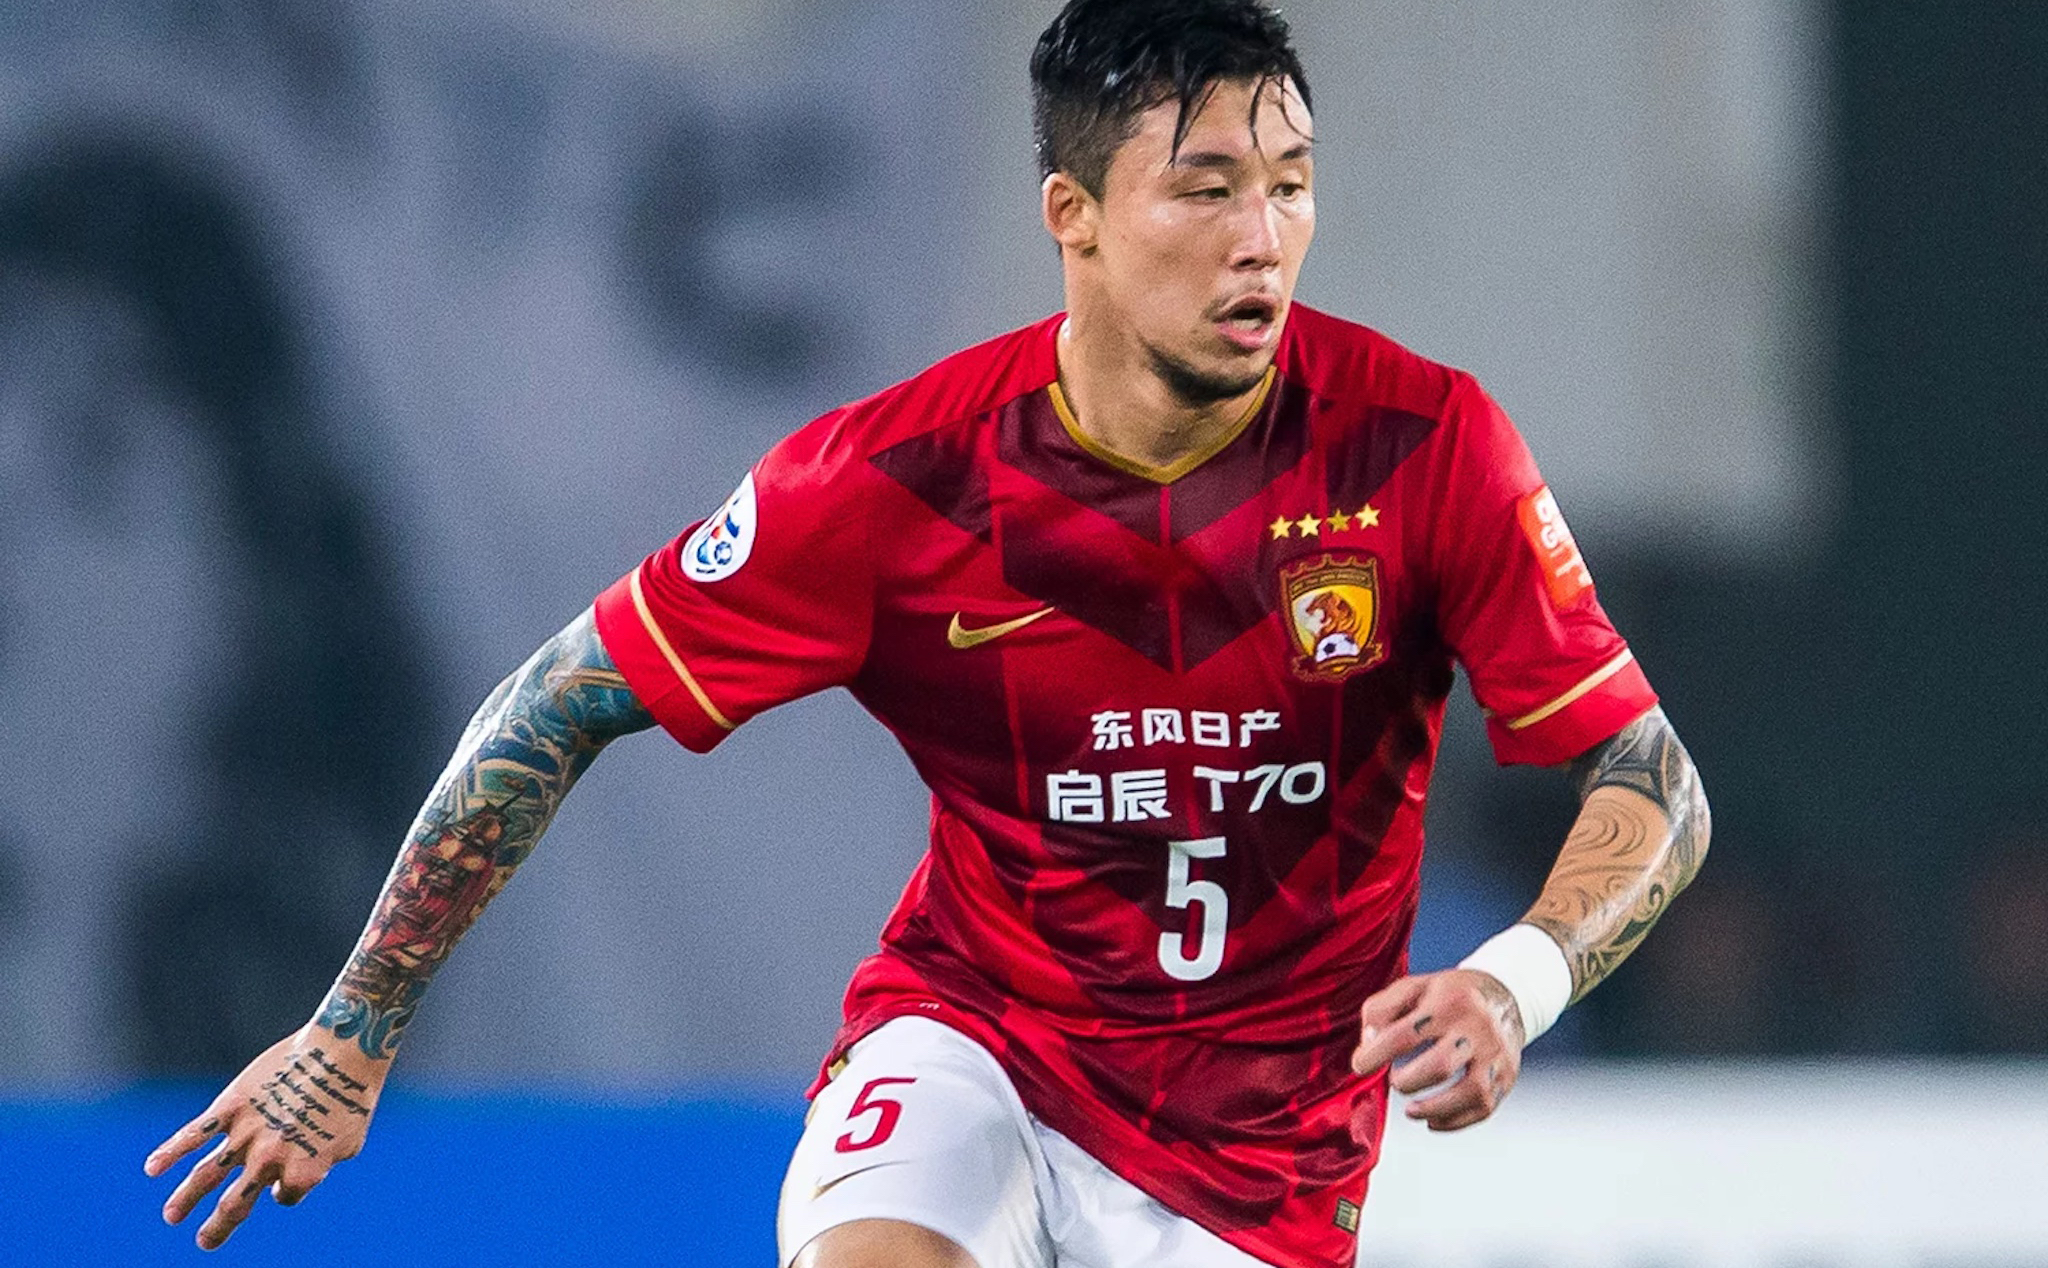 Trung Quốc cấm các cầu thủ bóng đá có hình xăm lên tuyển quốc gia